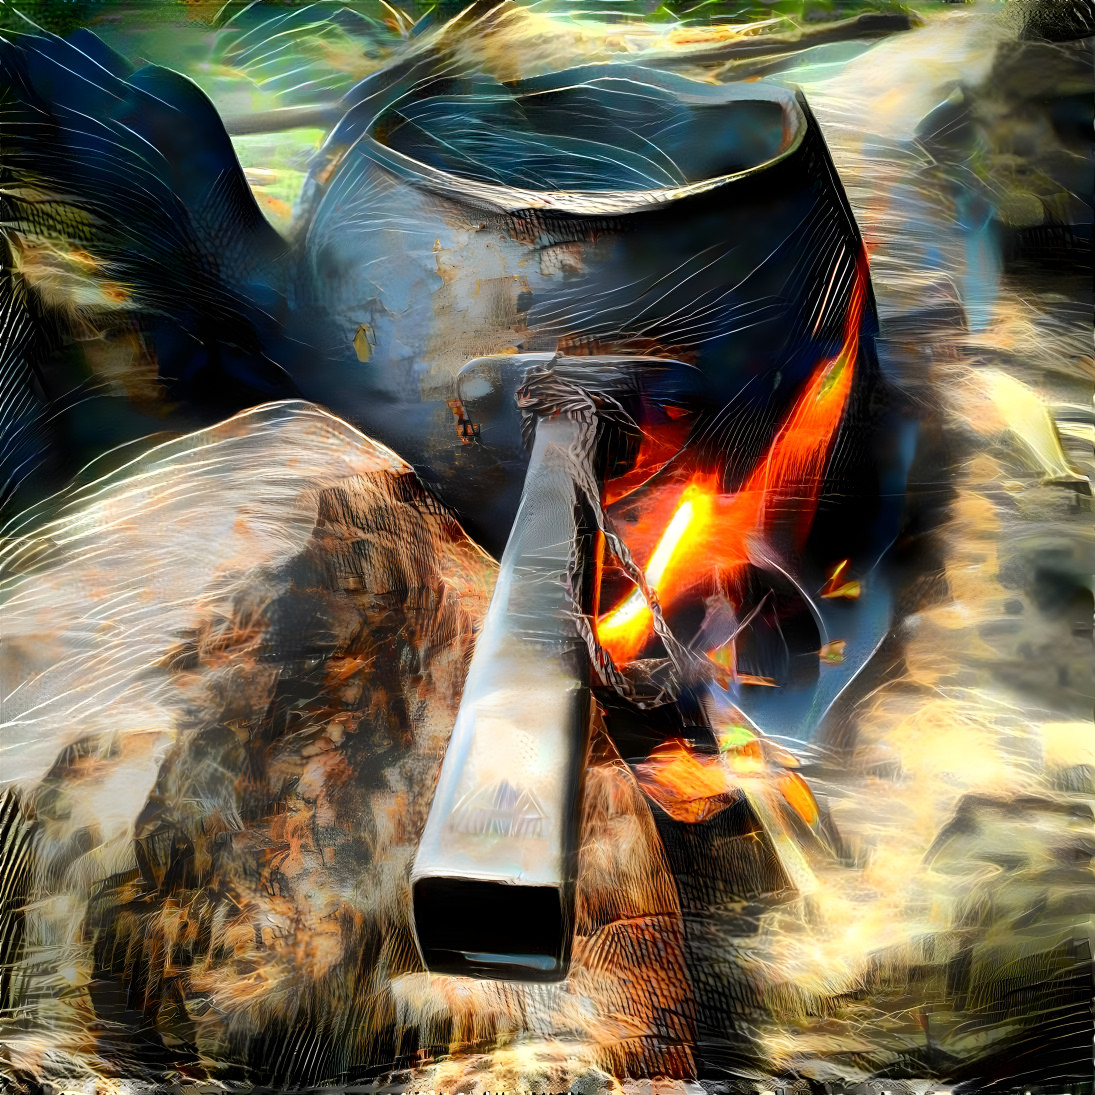 Campfire pan #2